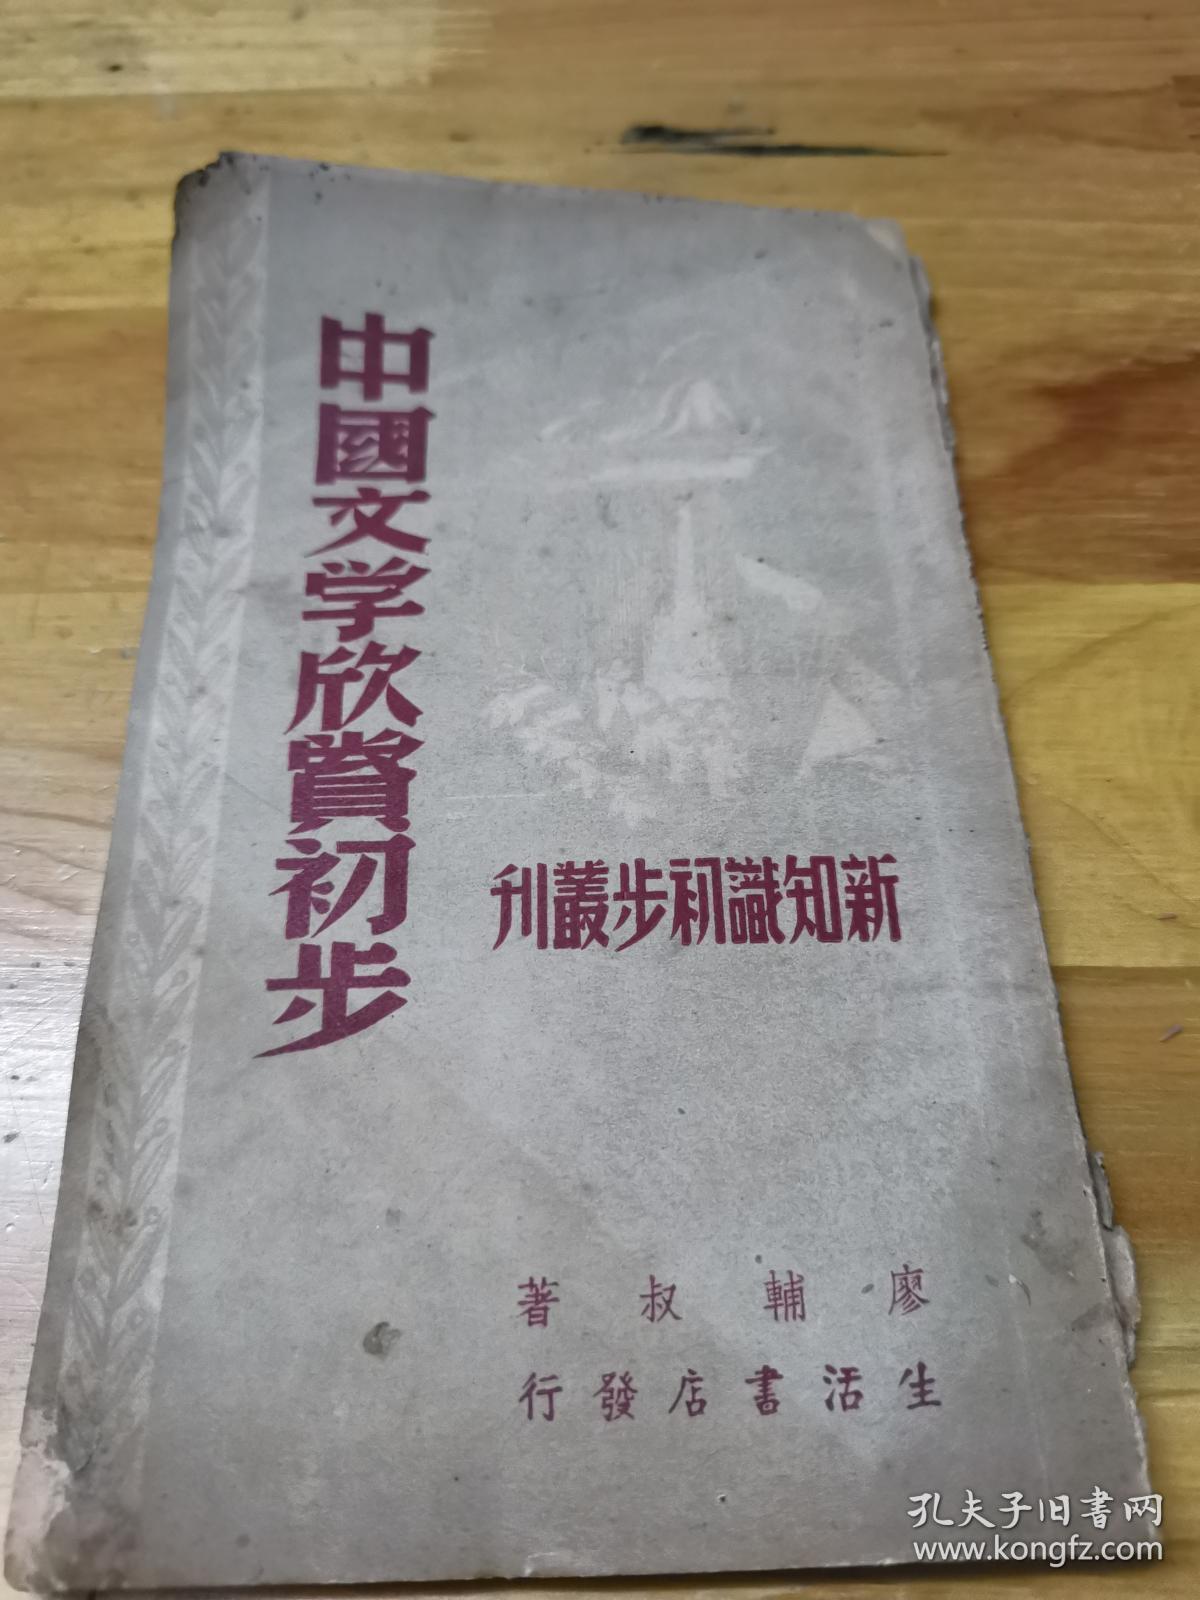 1946年《中国文学欣赏初步》